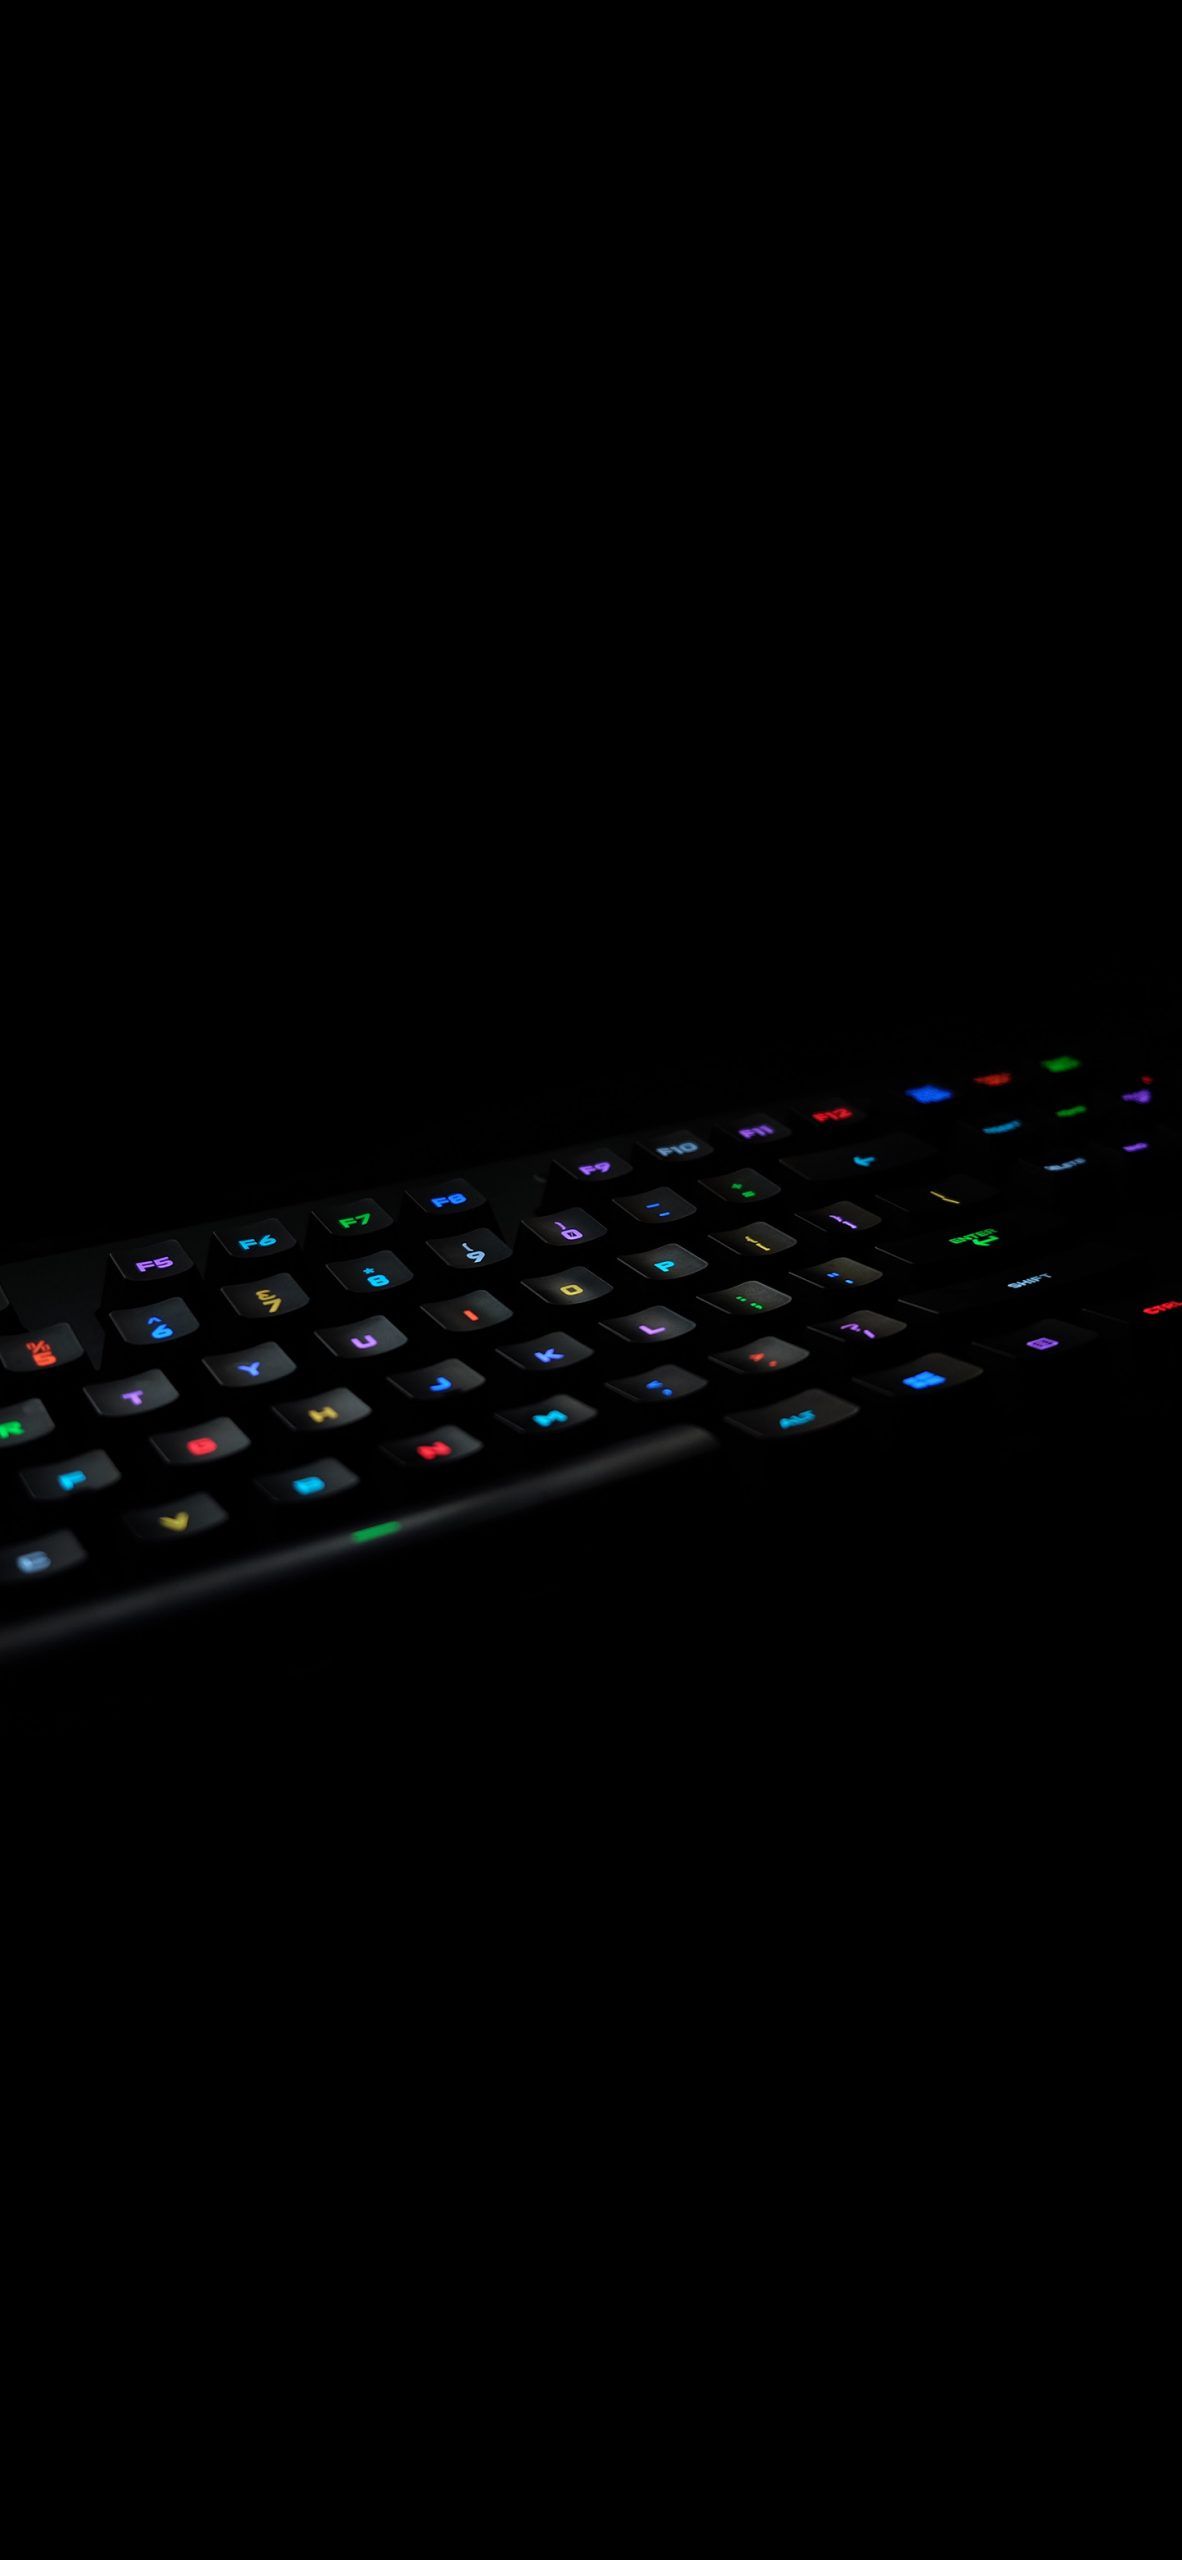 RGB backlit keyboard